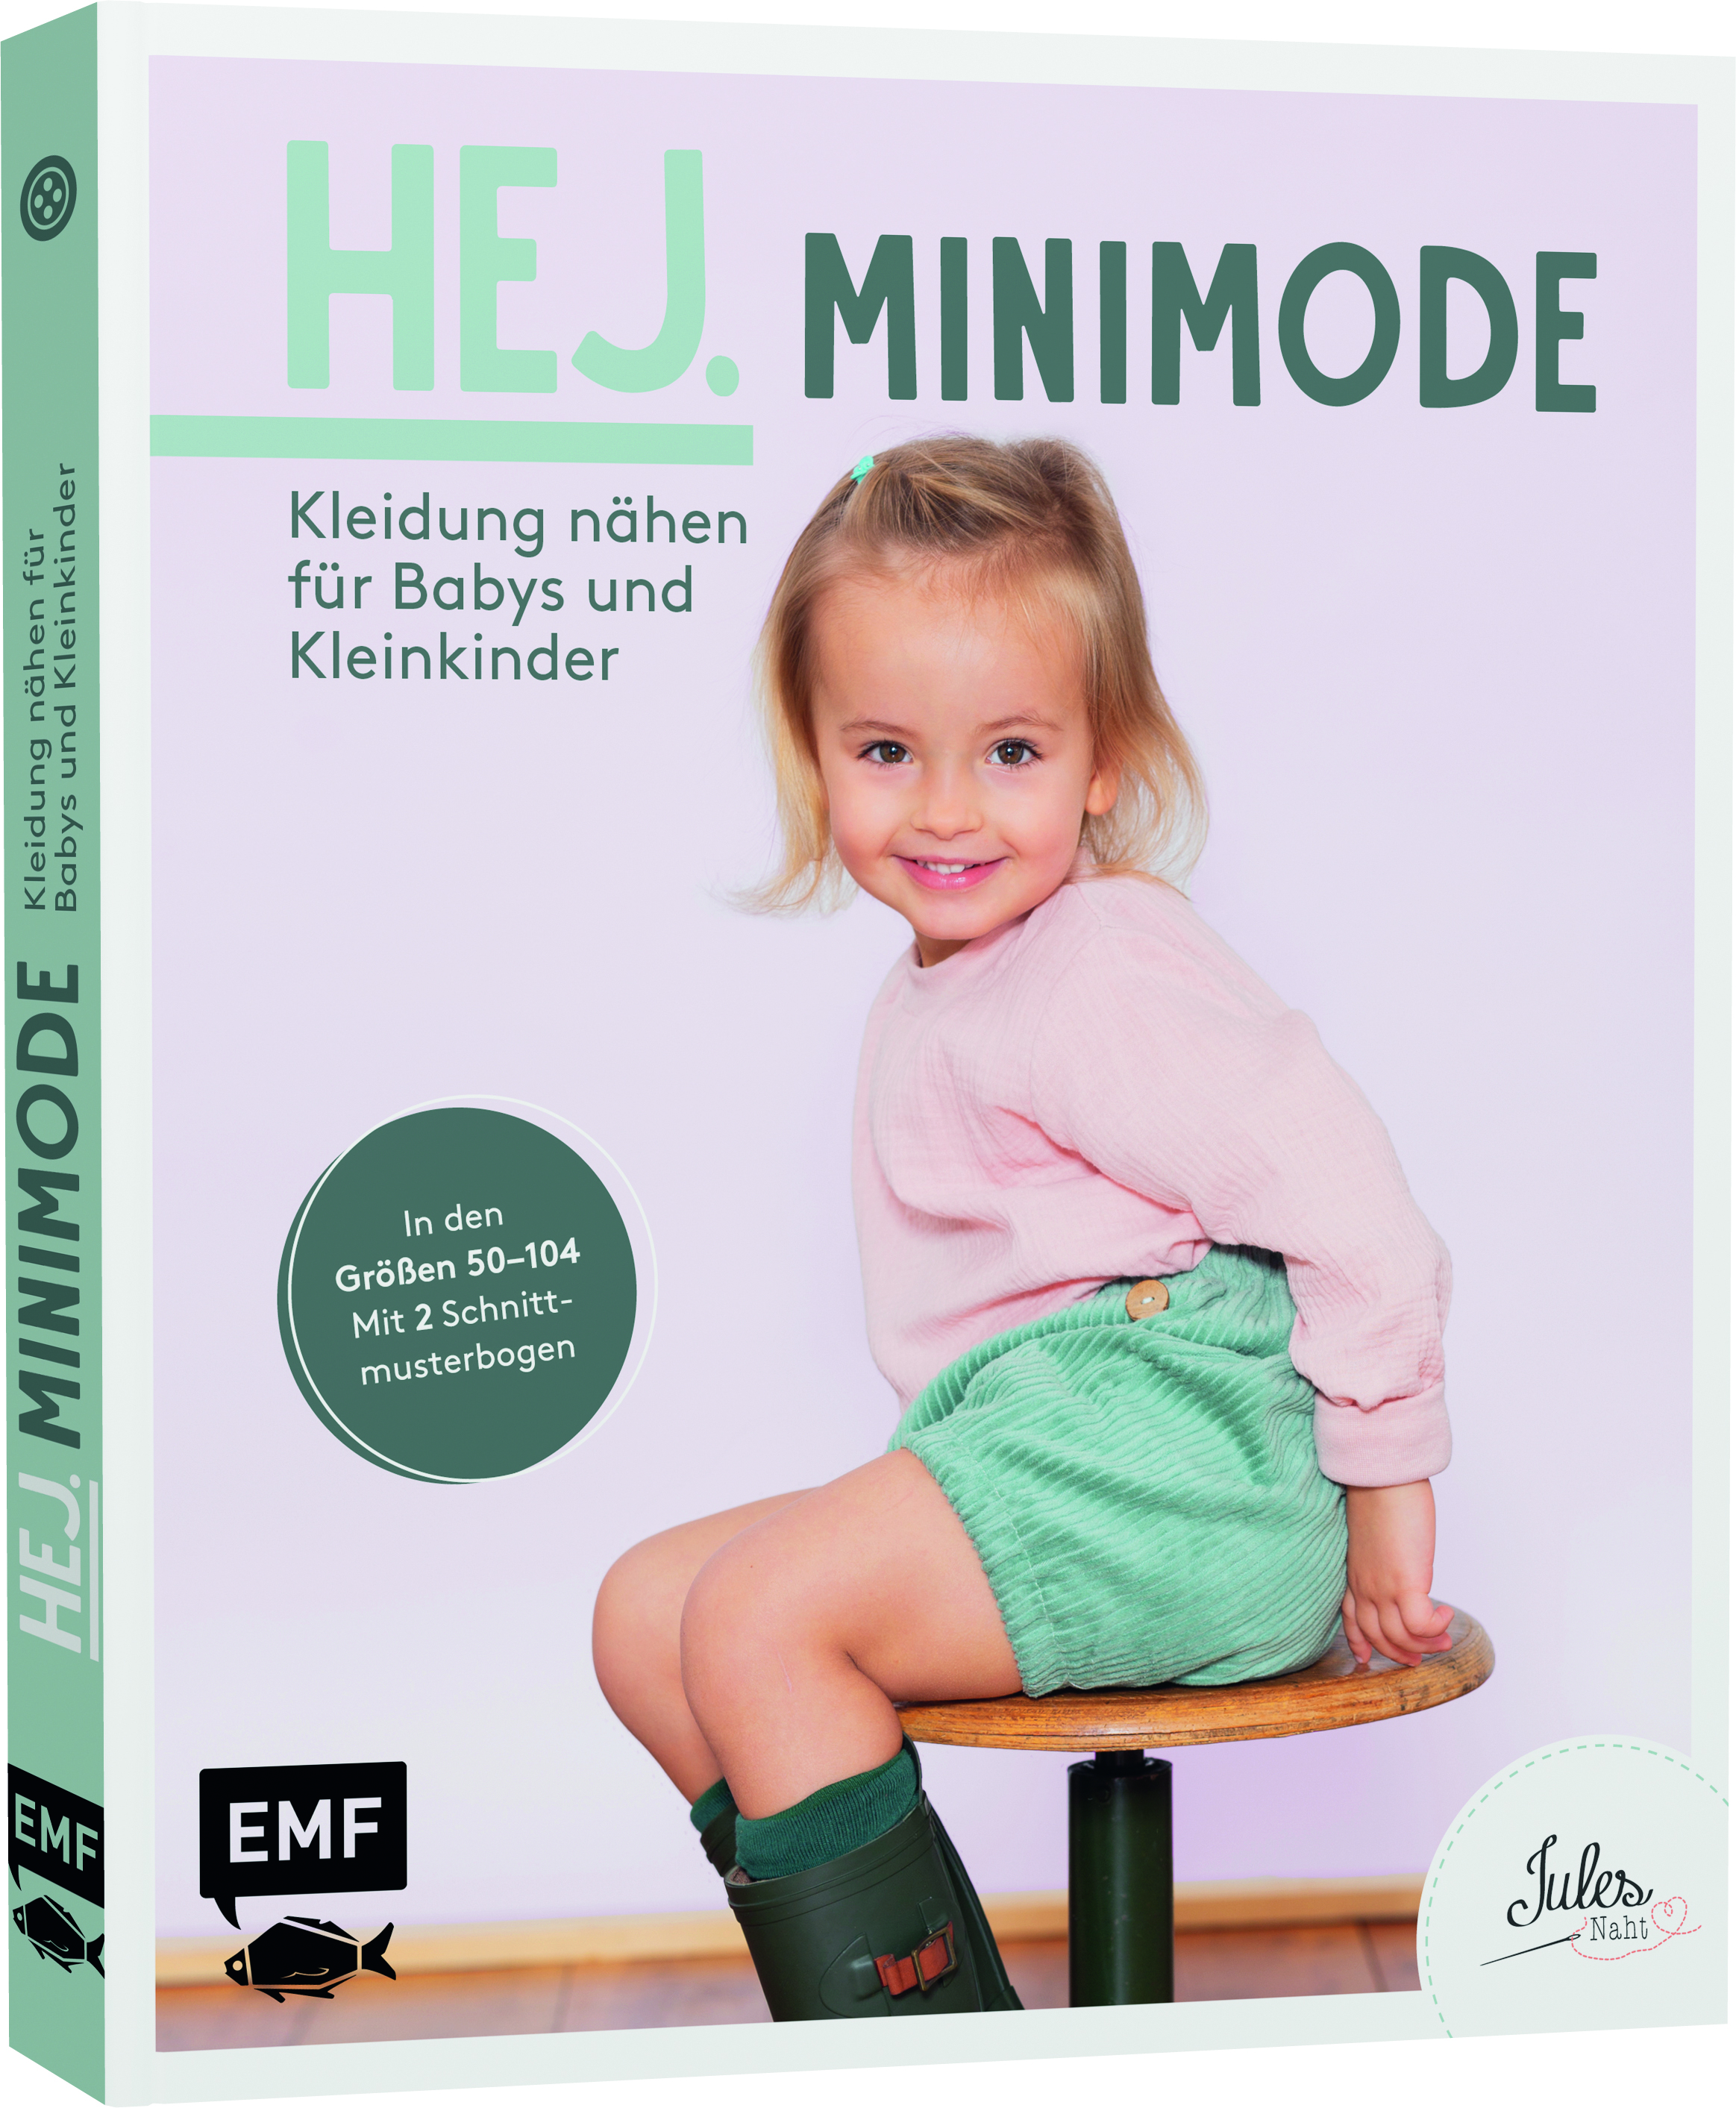 Schnittmuster Buch Hej. Minimode – Kleidung nähen für Babys und Kleinkinder Gr. 50-104 Webware - Walk